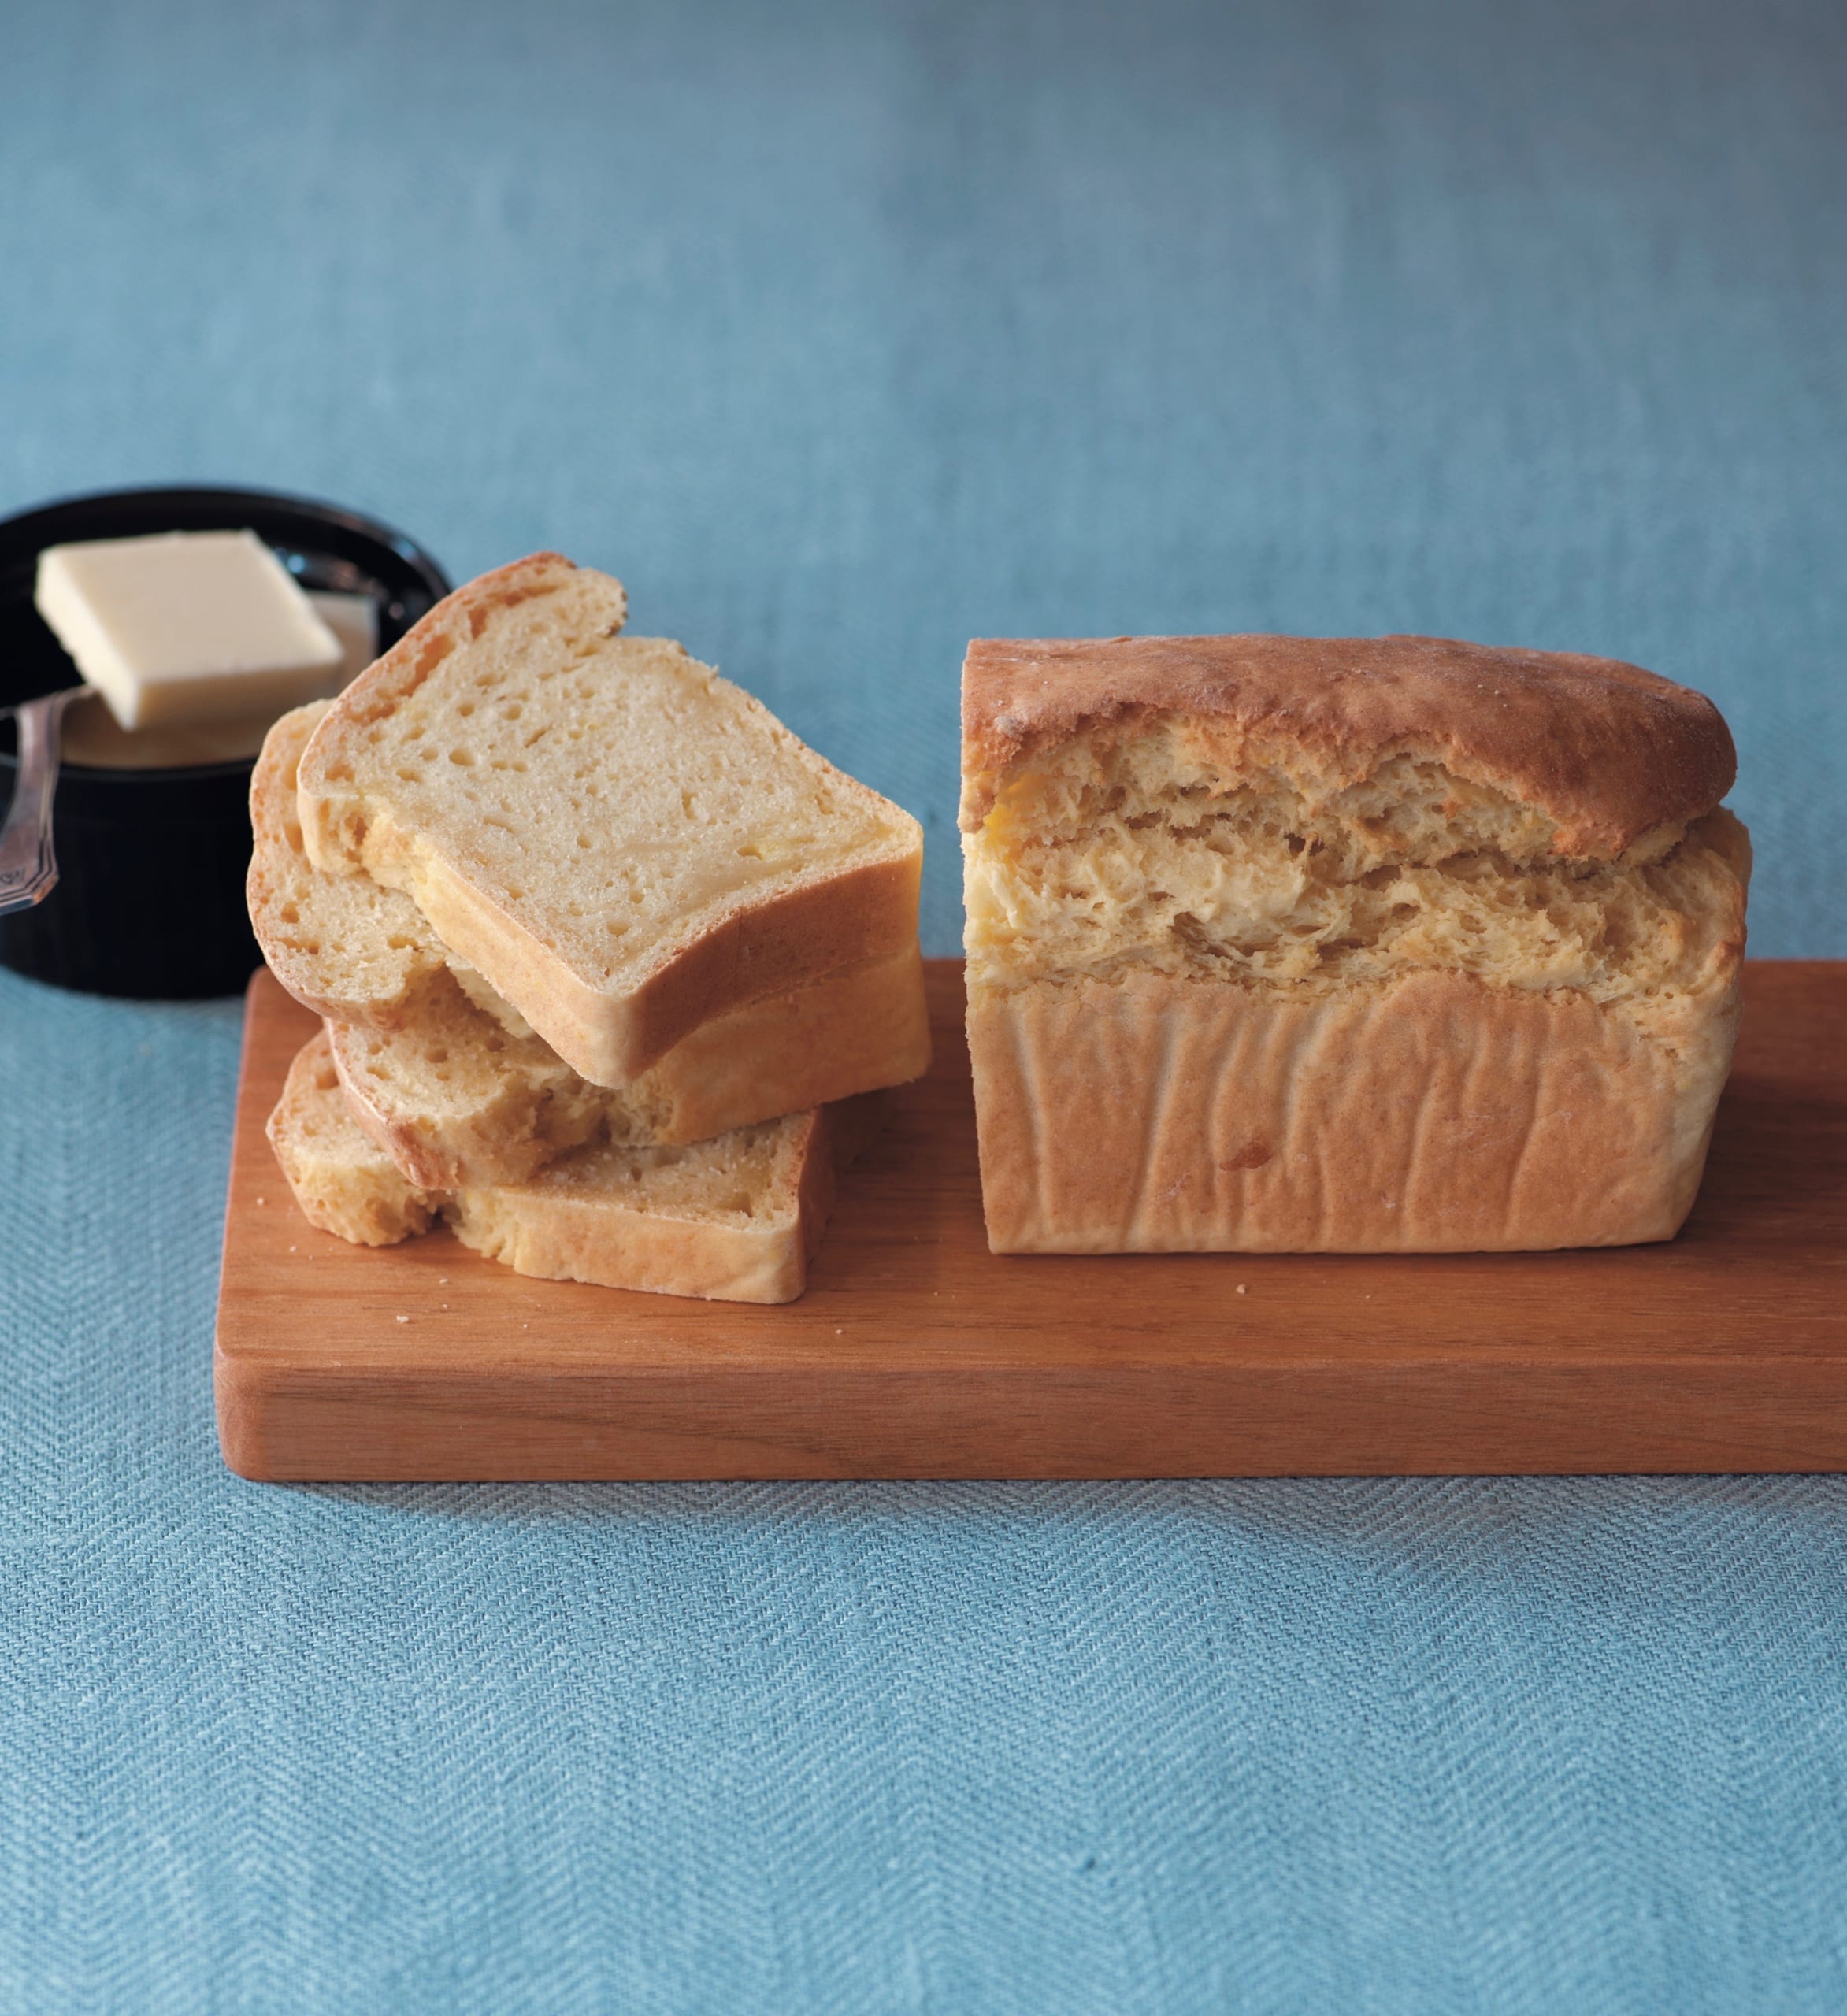 ホットケーキミックスで食パン しっとり食感がおいしい ムラヨシマサユキさんの 豆腐のミニ食パン レシピ 暮らしとおしゃれの編集室